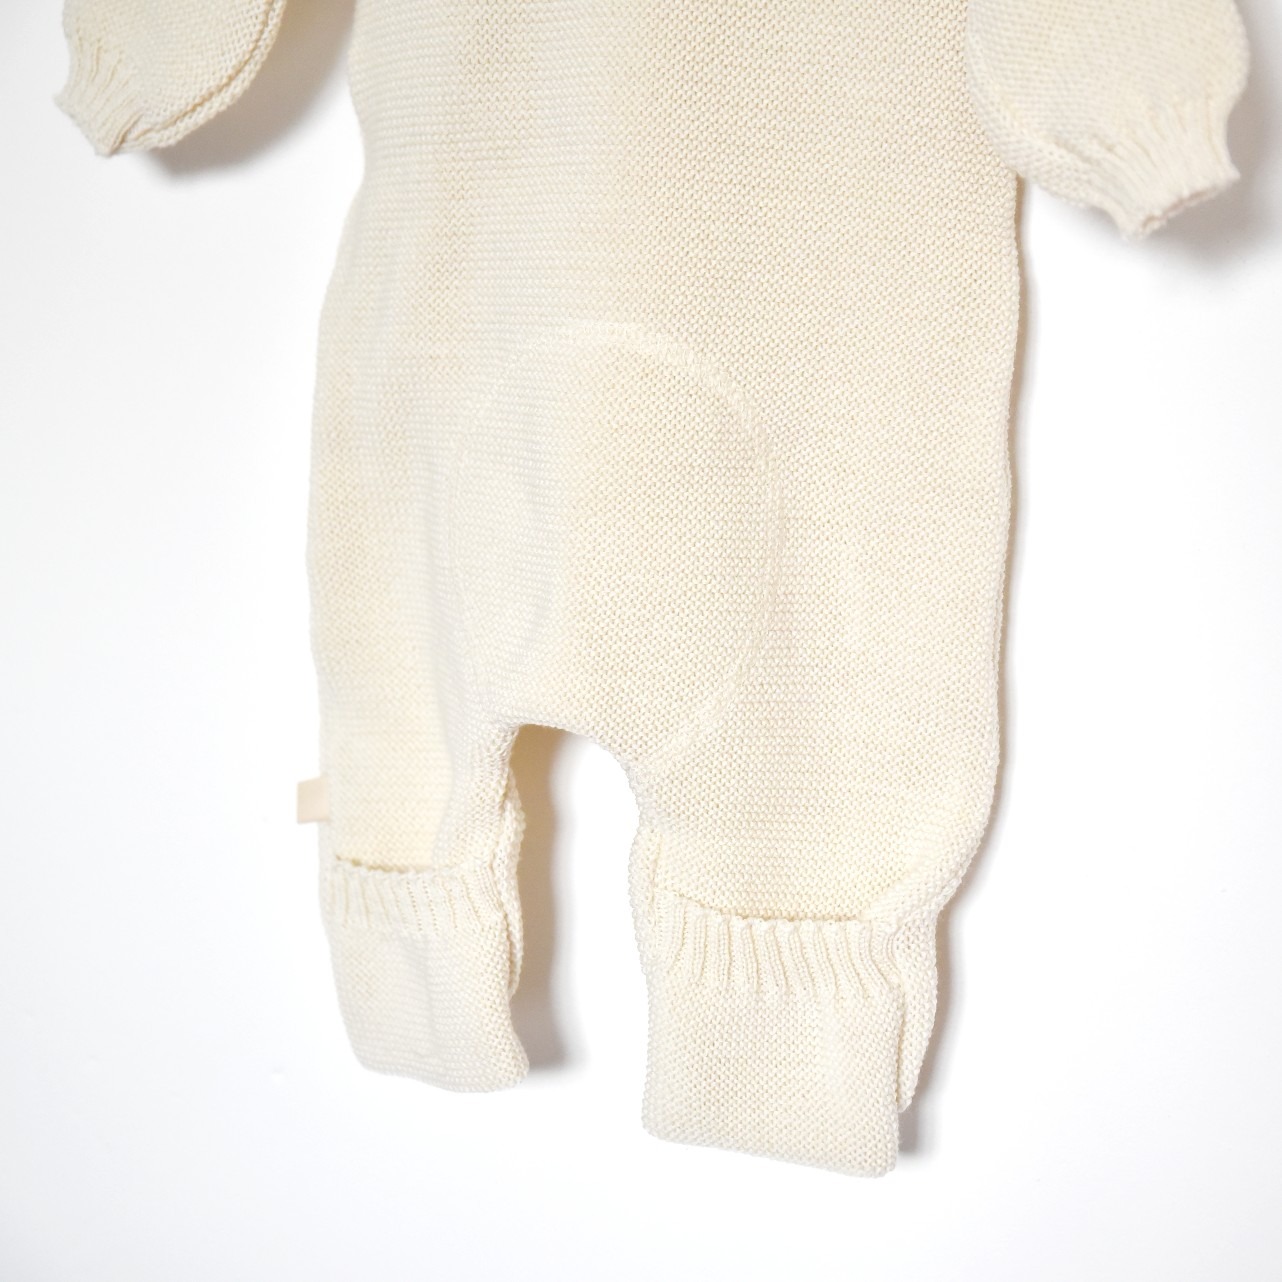 Moufles bébé en laine mérinos tricotée bio - gris clair Disana • Ode to Wool